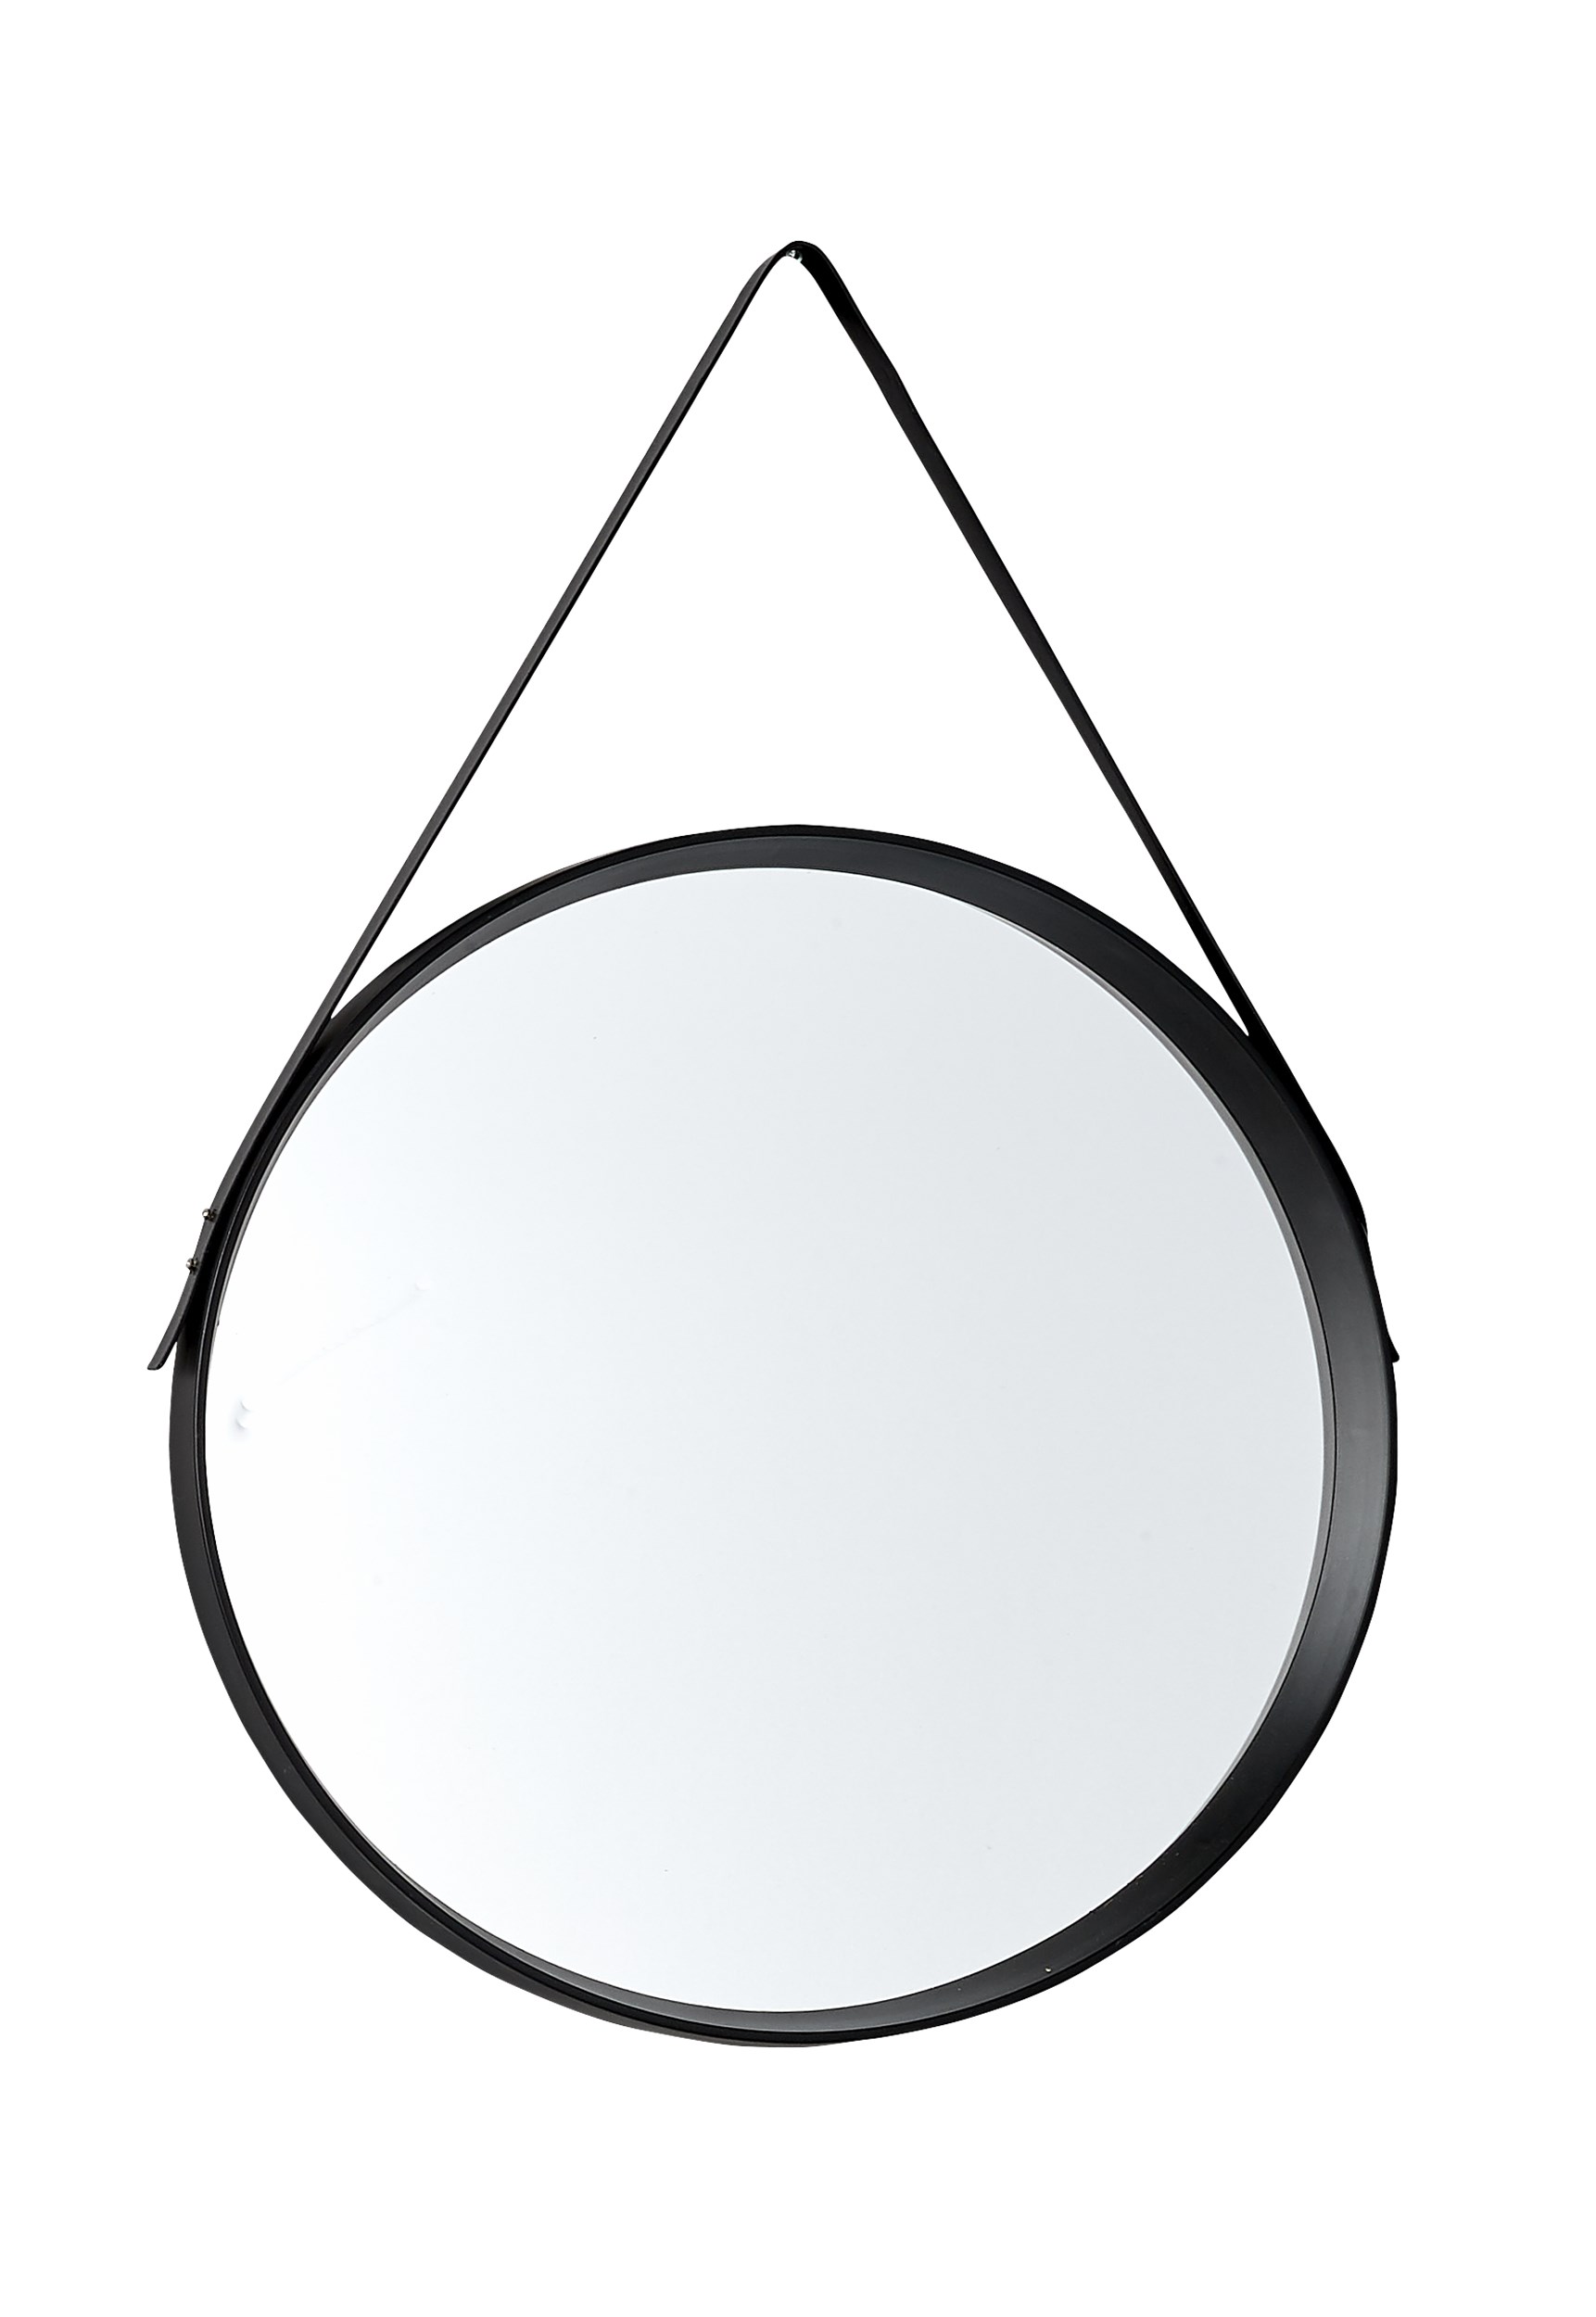 Noma spegel 50 cm - Ram i svart plast och svart rem i konstläder